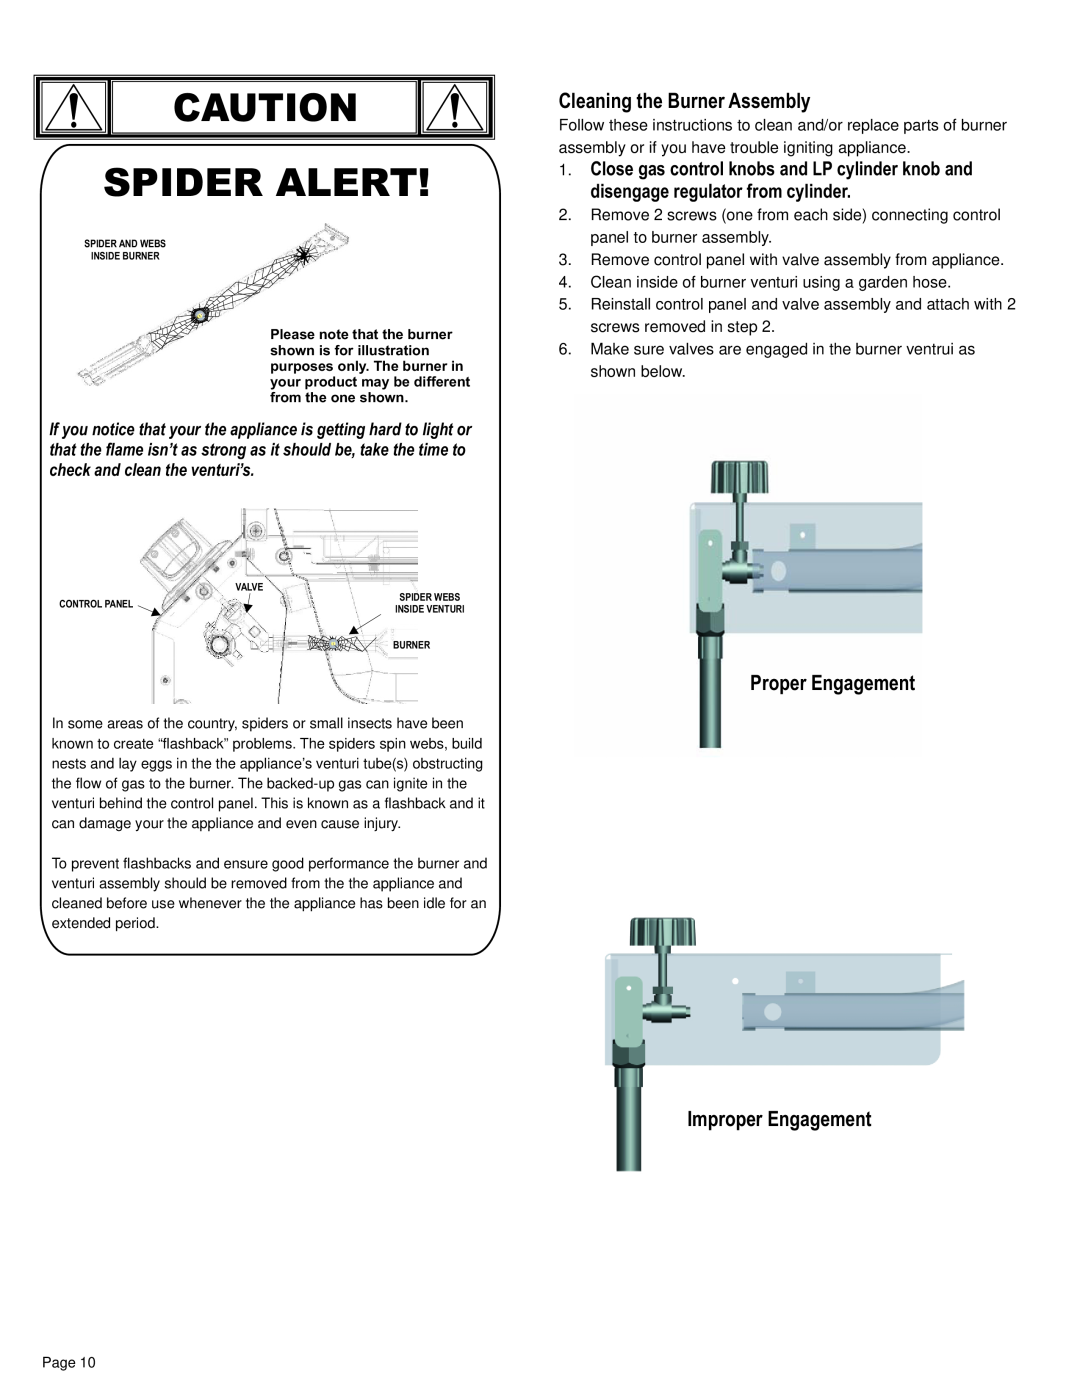 Char-Broil 11101706 manual Cleaning the Burner Assembly, Proper Engagement, Improper Engagement, Spider Alert 